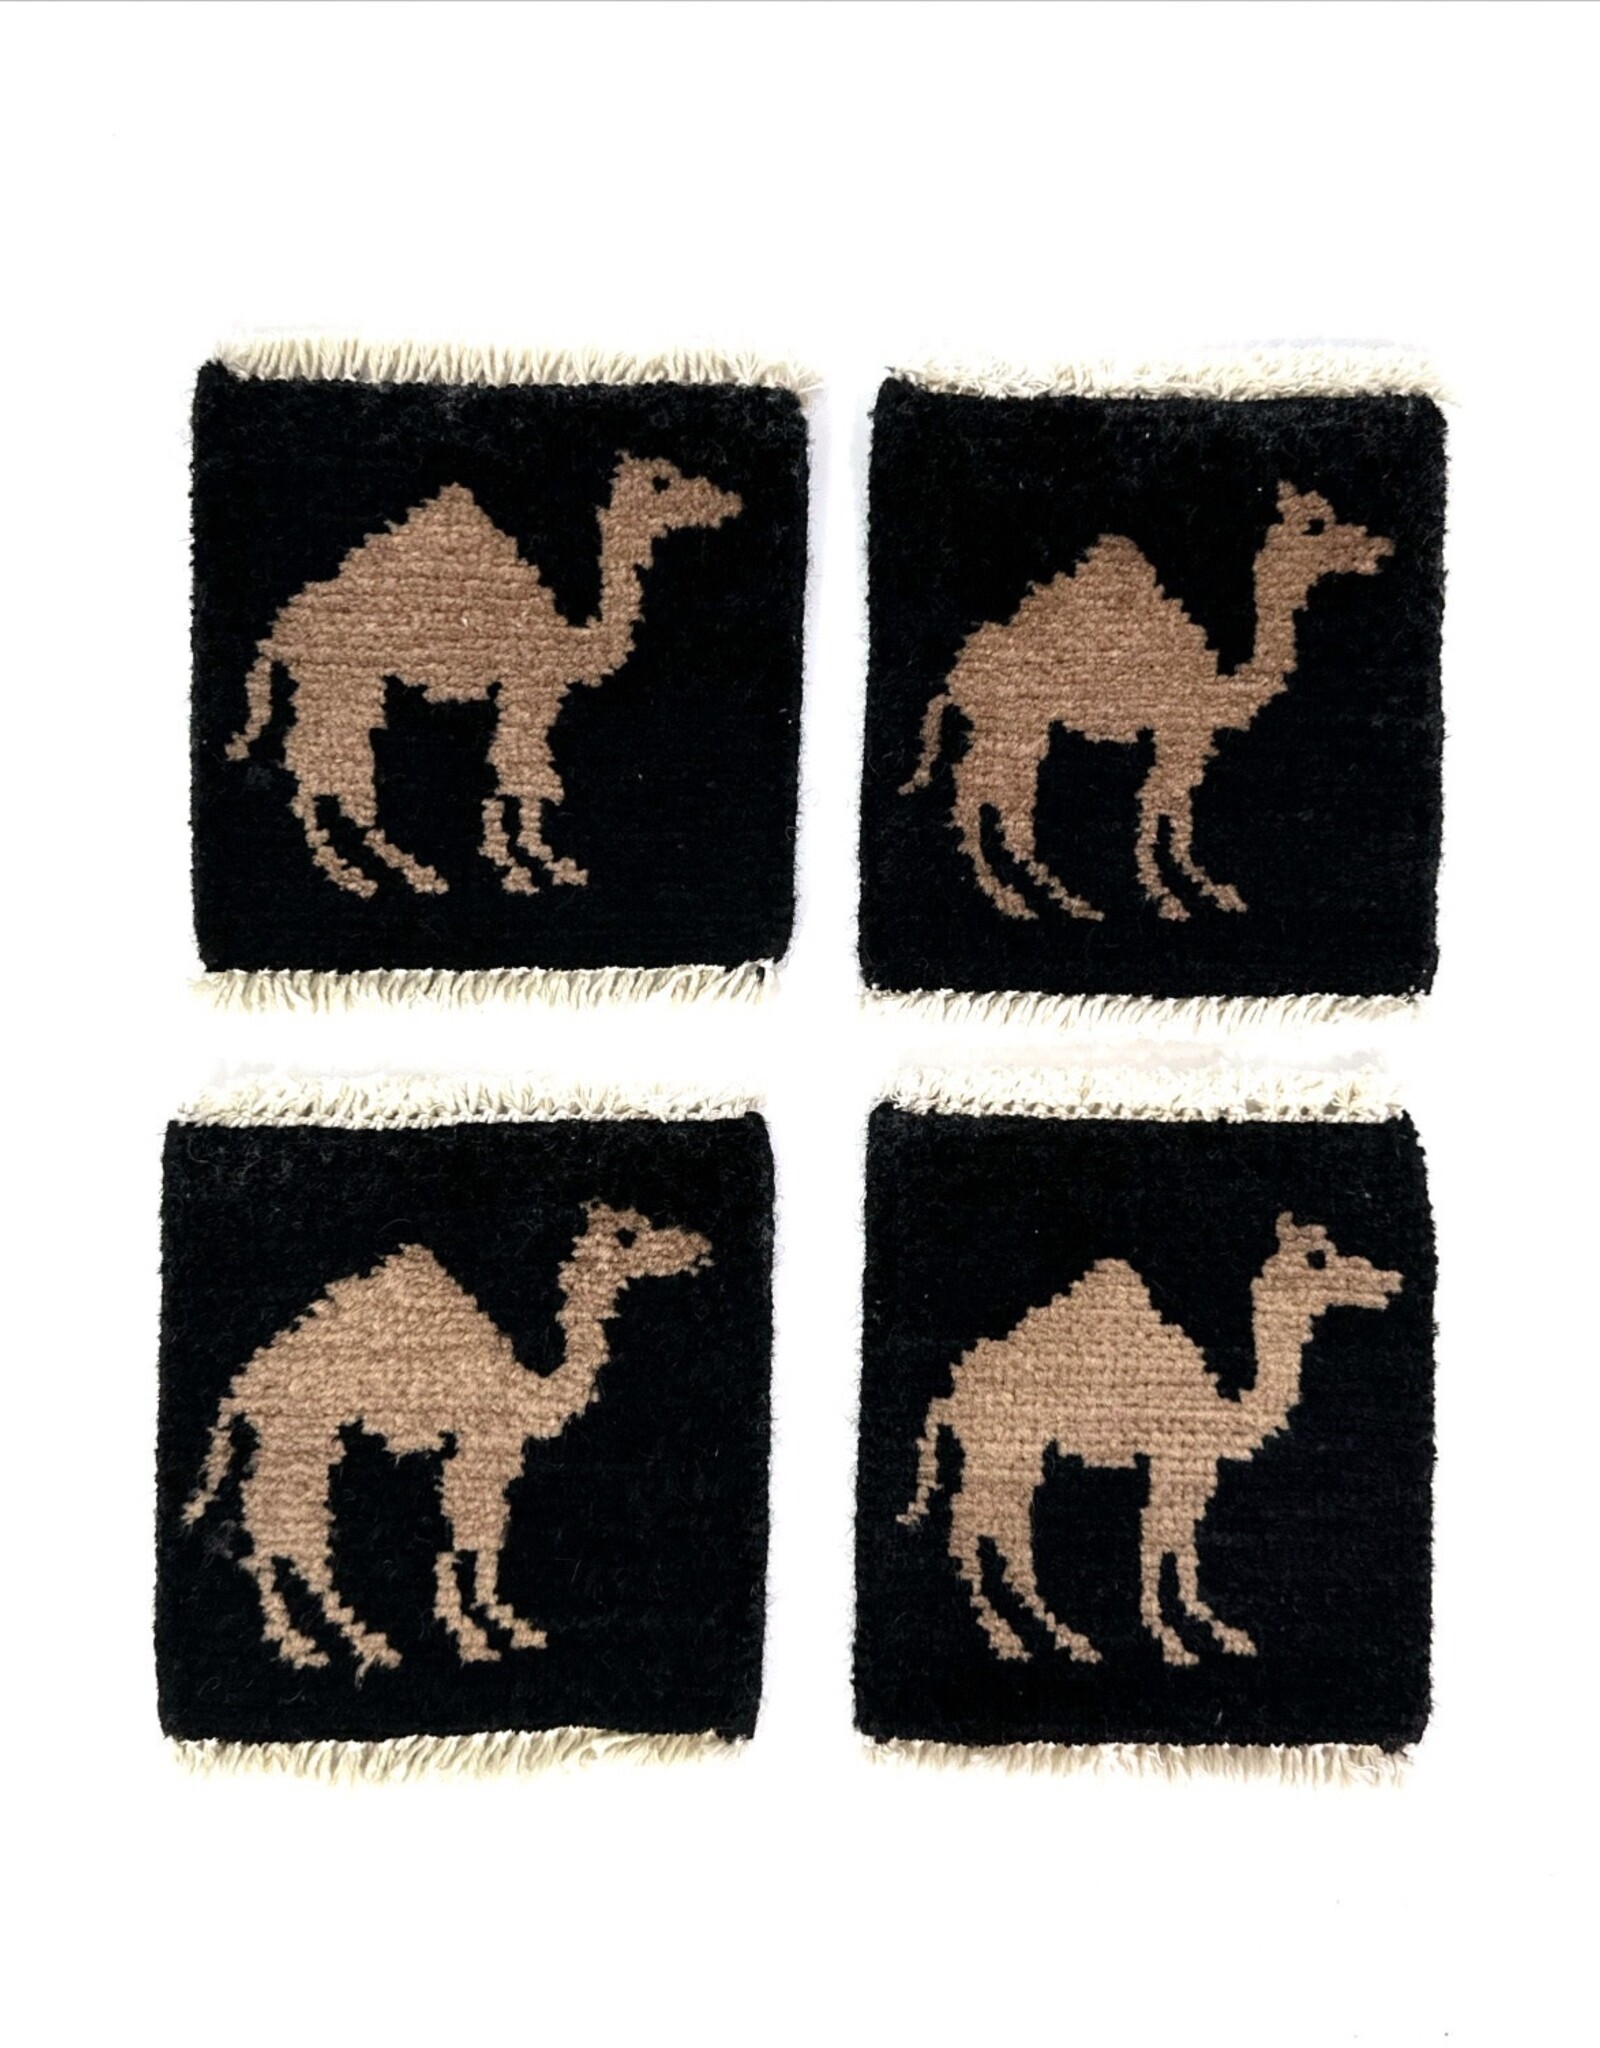 Bunyaad Pakistan Camel Mug Rug - Black